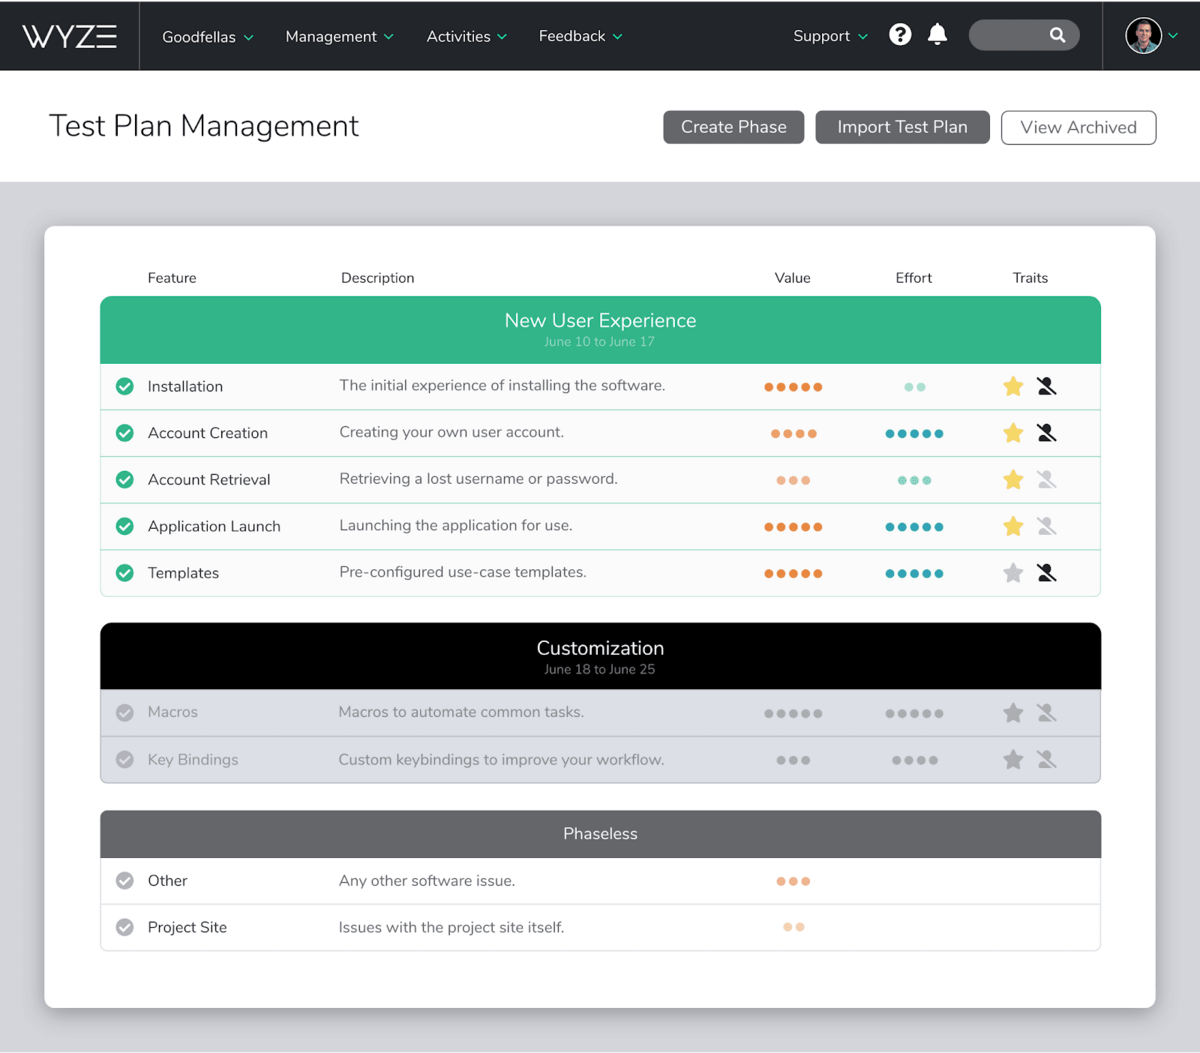 A screenshot of Centercode's Test Plan Management interface